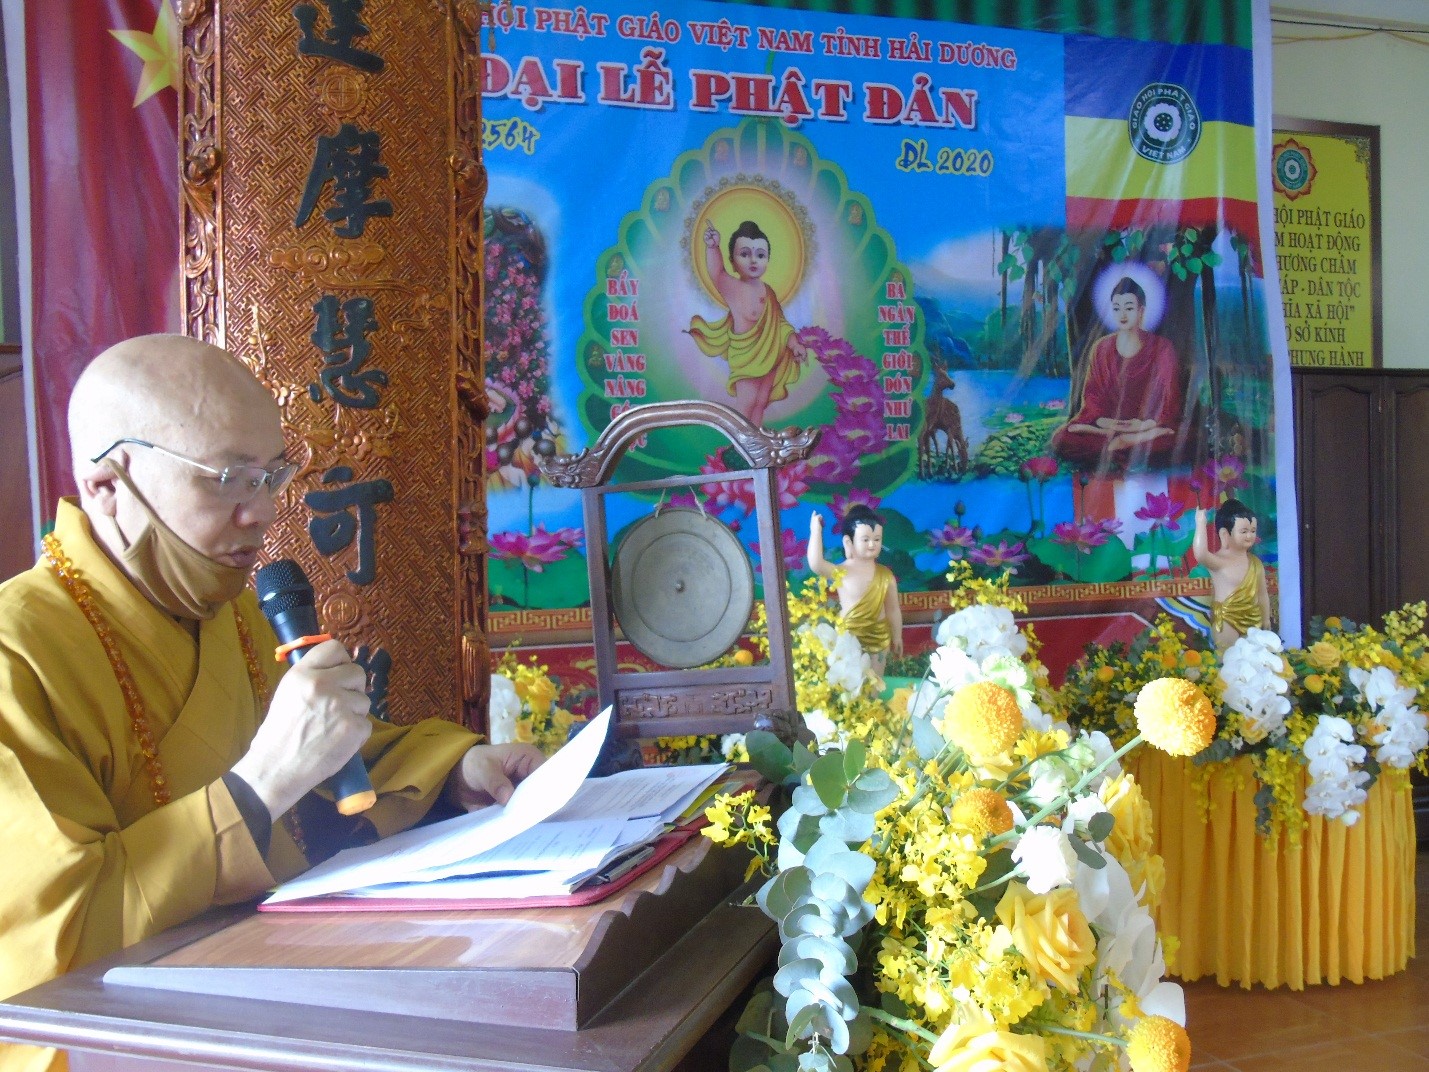 Lễ Phật đản nội bộ PL2564 của Phật giáo tỉnh Hải Dương